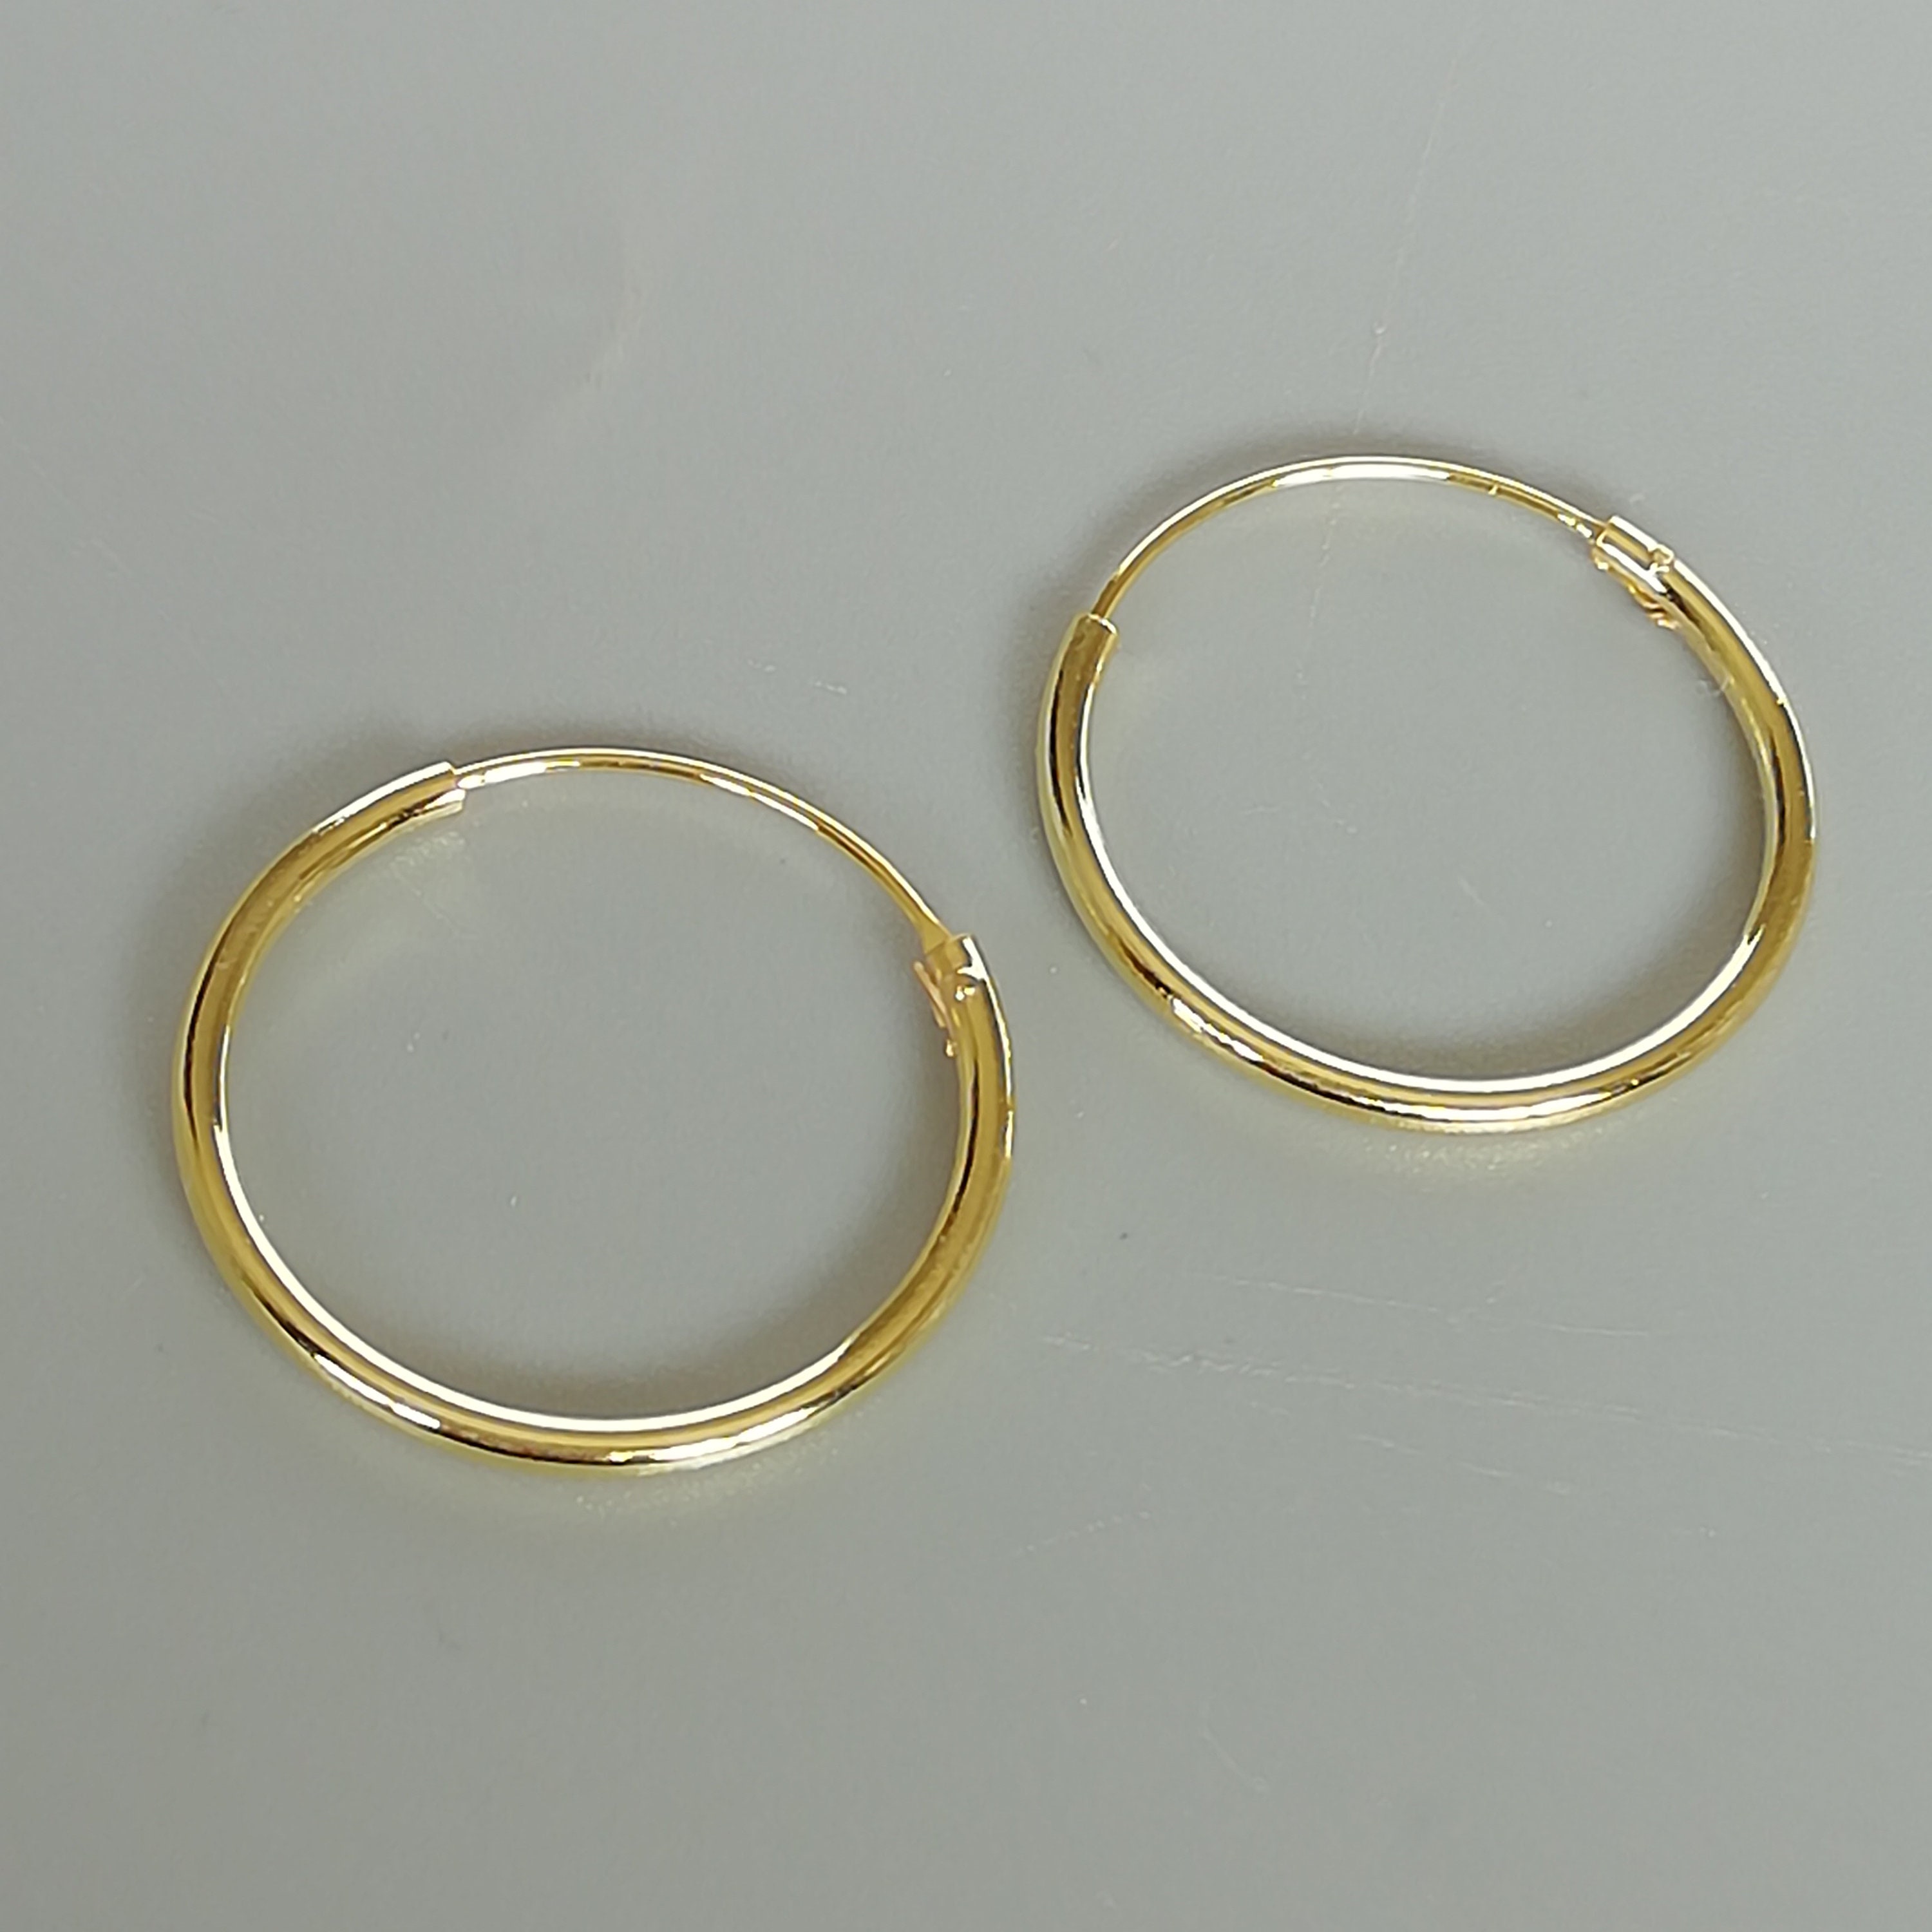 Gold hoop earrings 20 mm gold plated hoops 14 gauge gold | Etsy